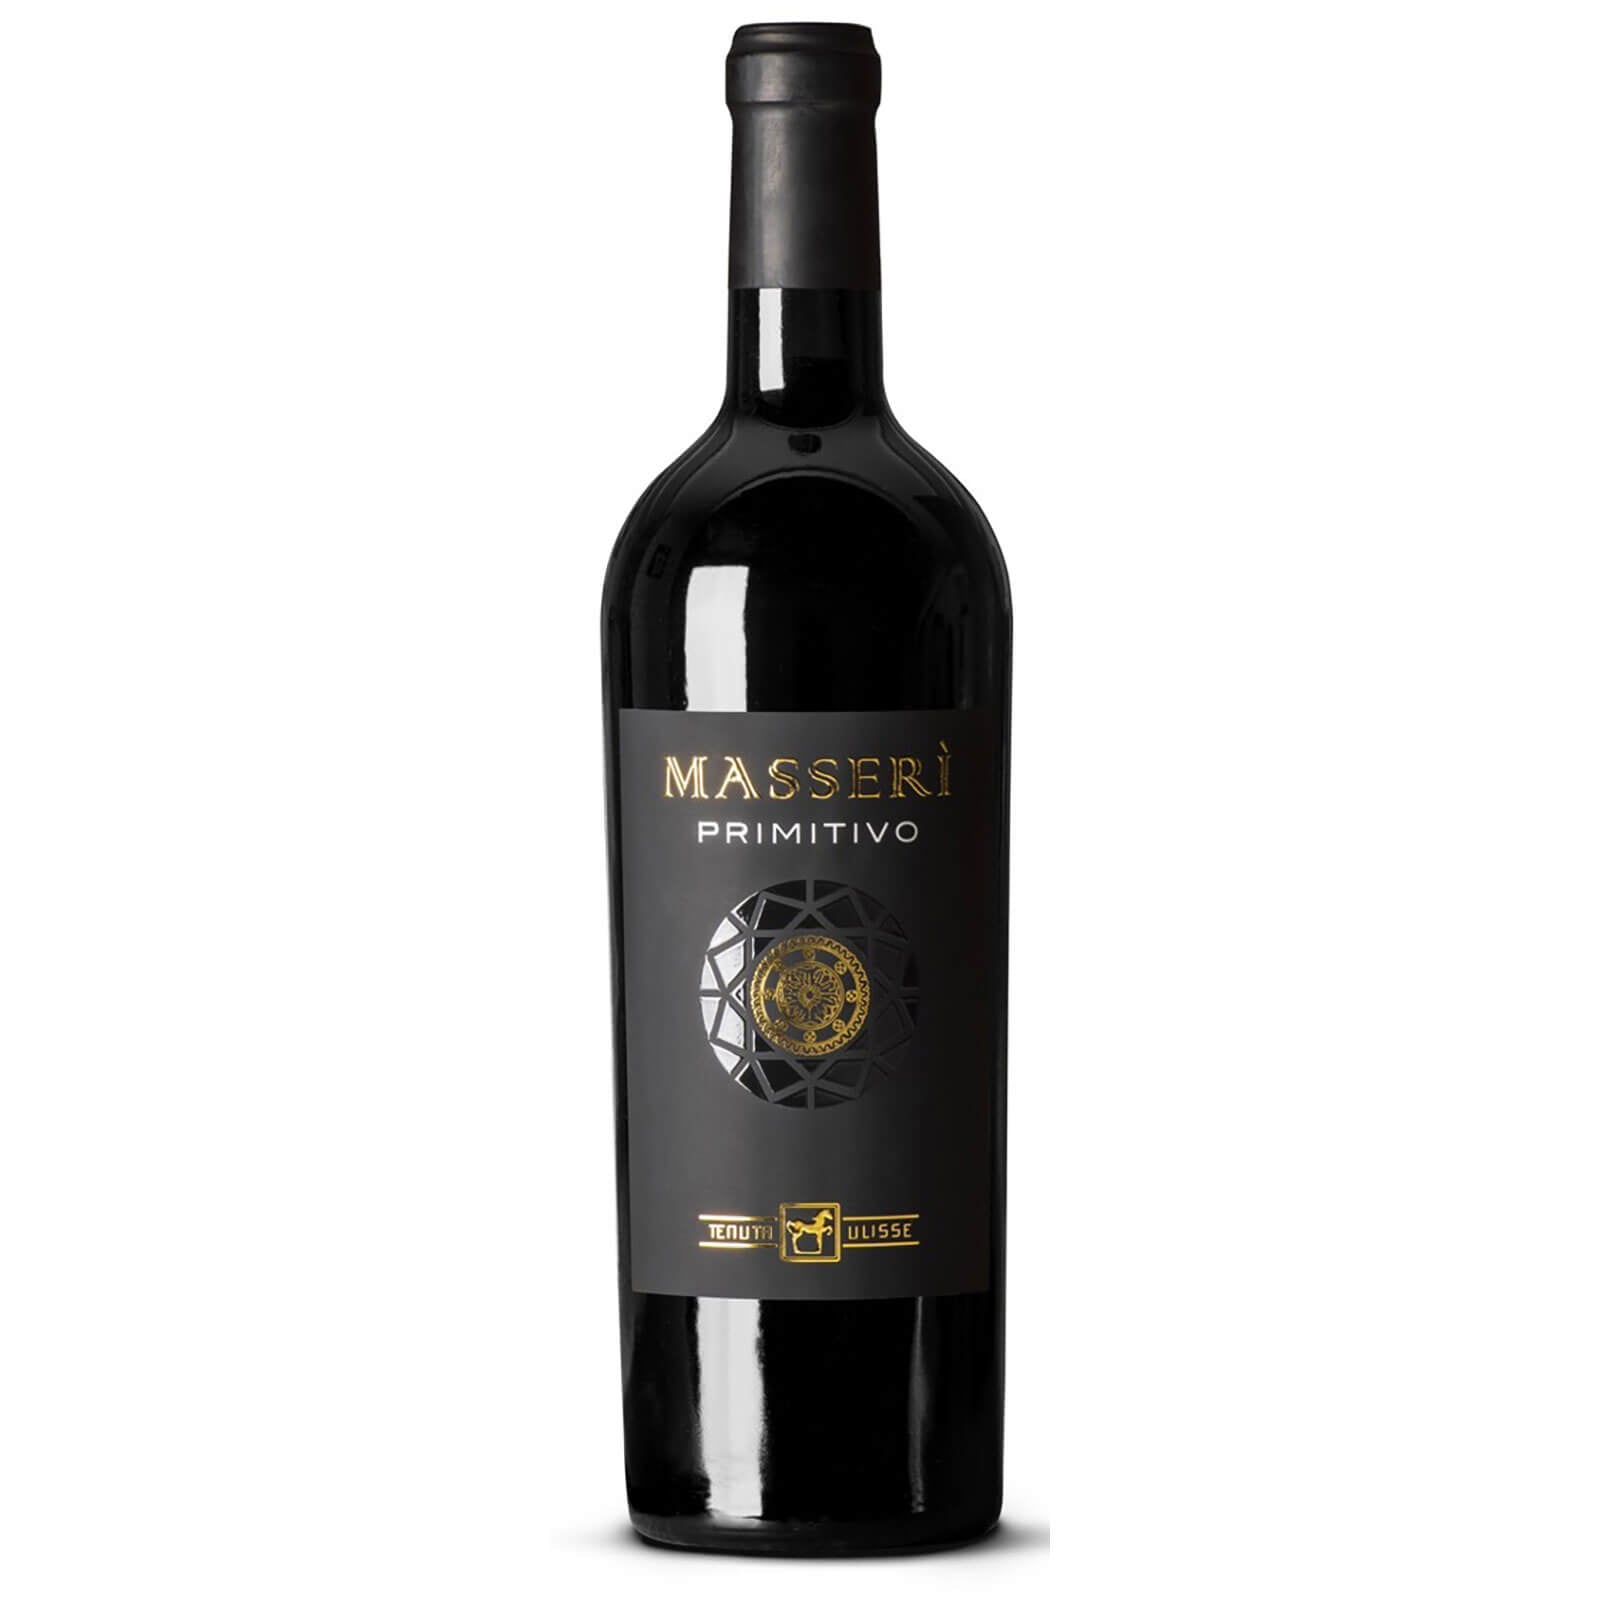 Vin Masseri Primitivo, Tenuta di Ulisse, 750ml - Delicatessen Delicatessen